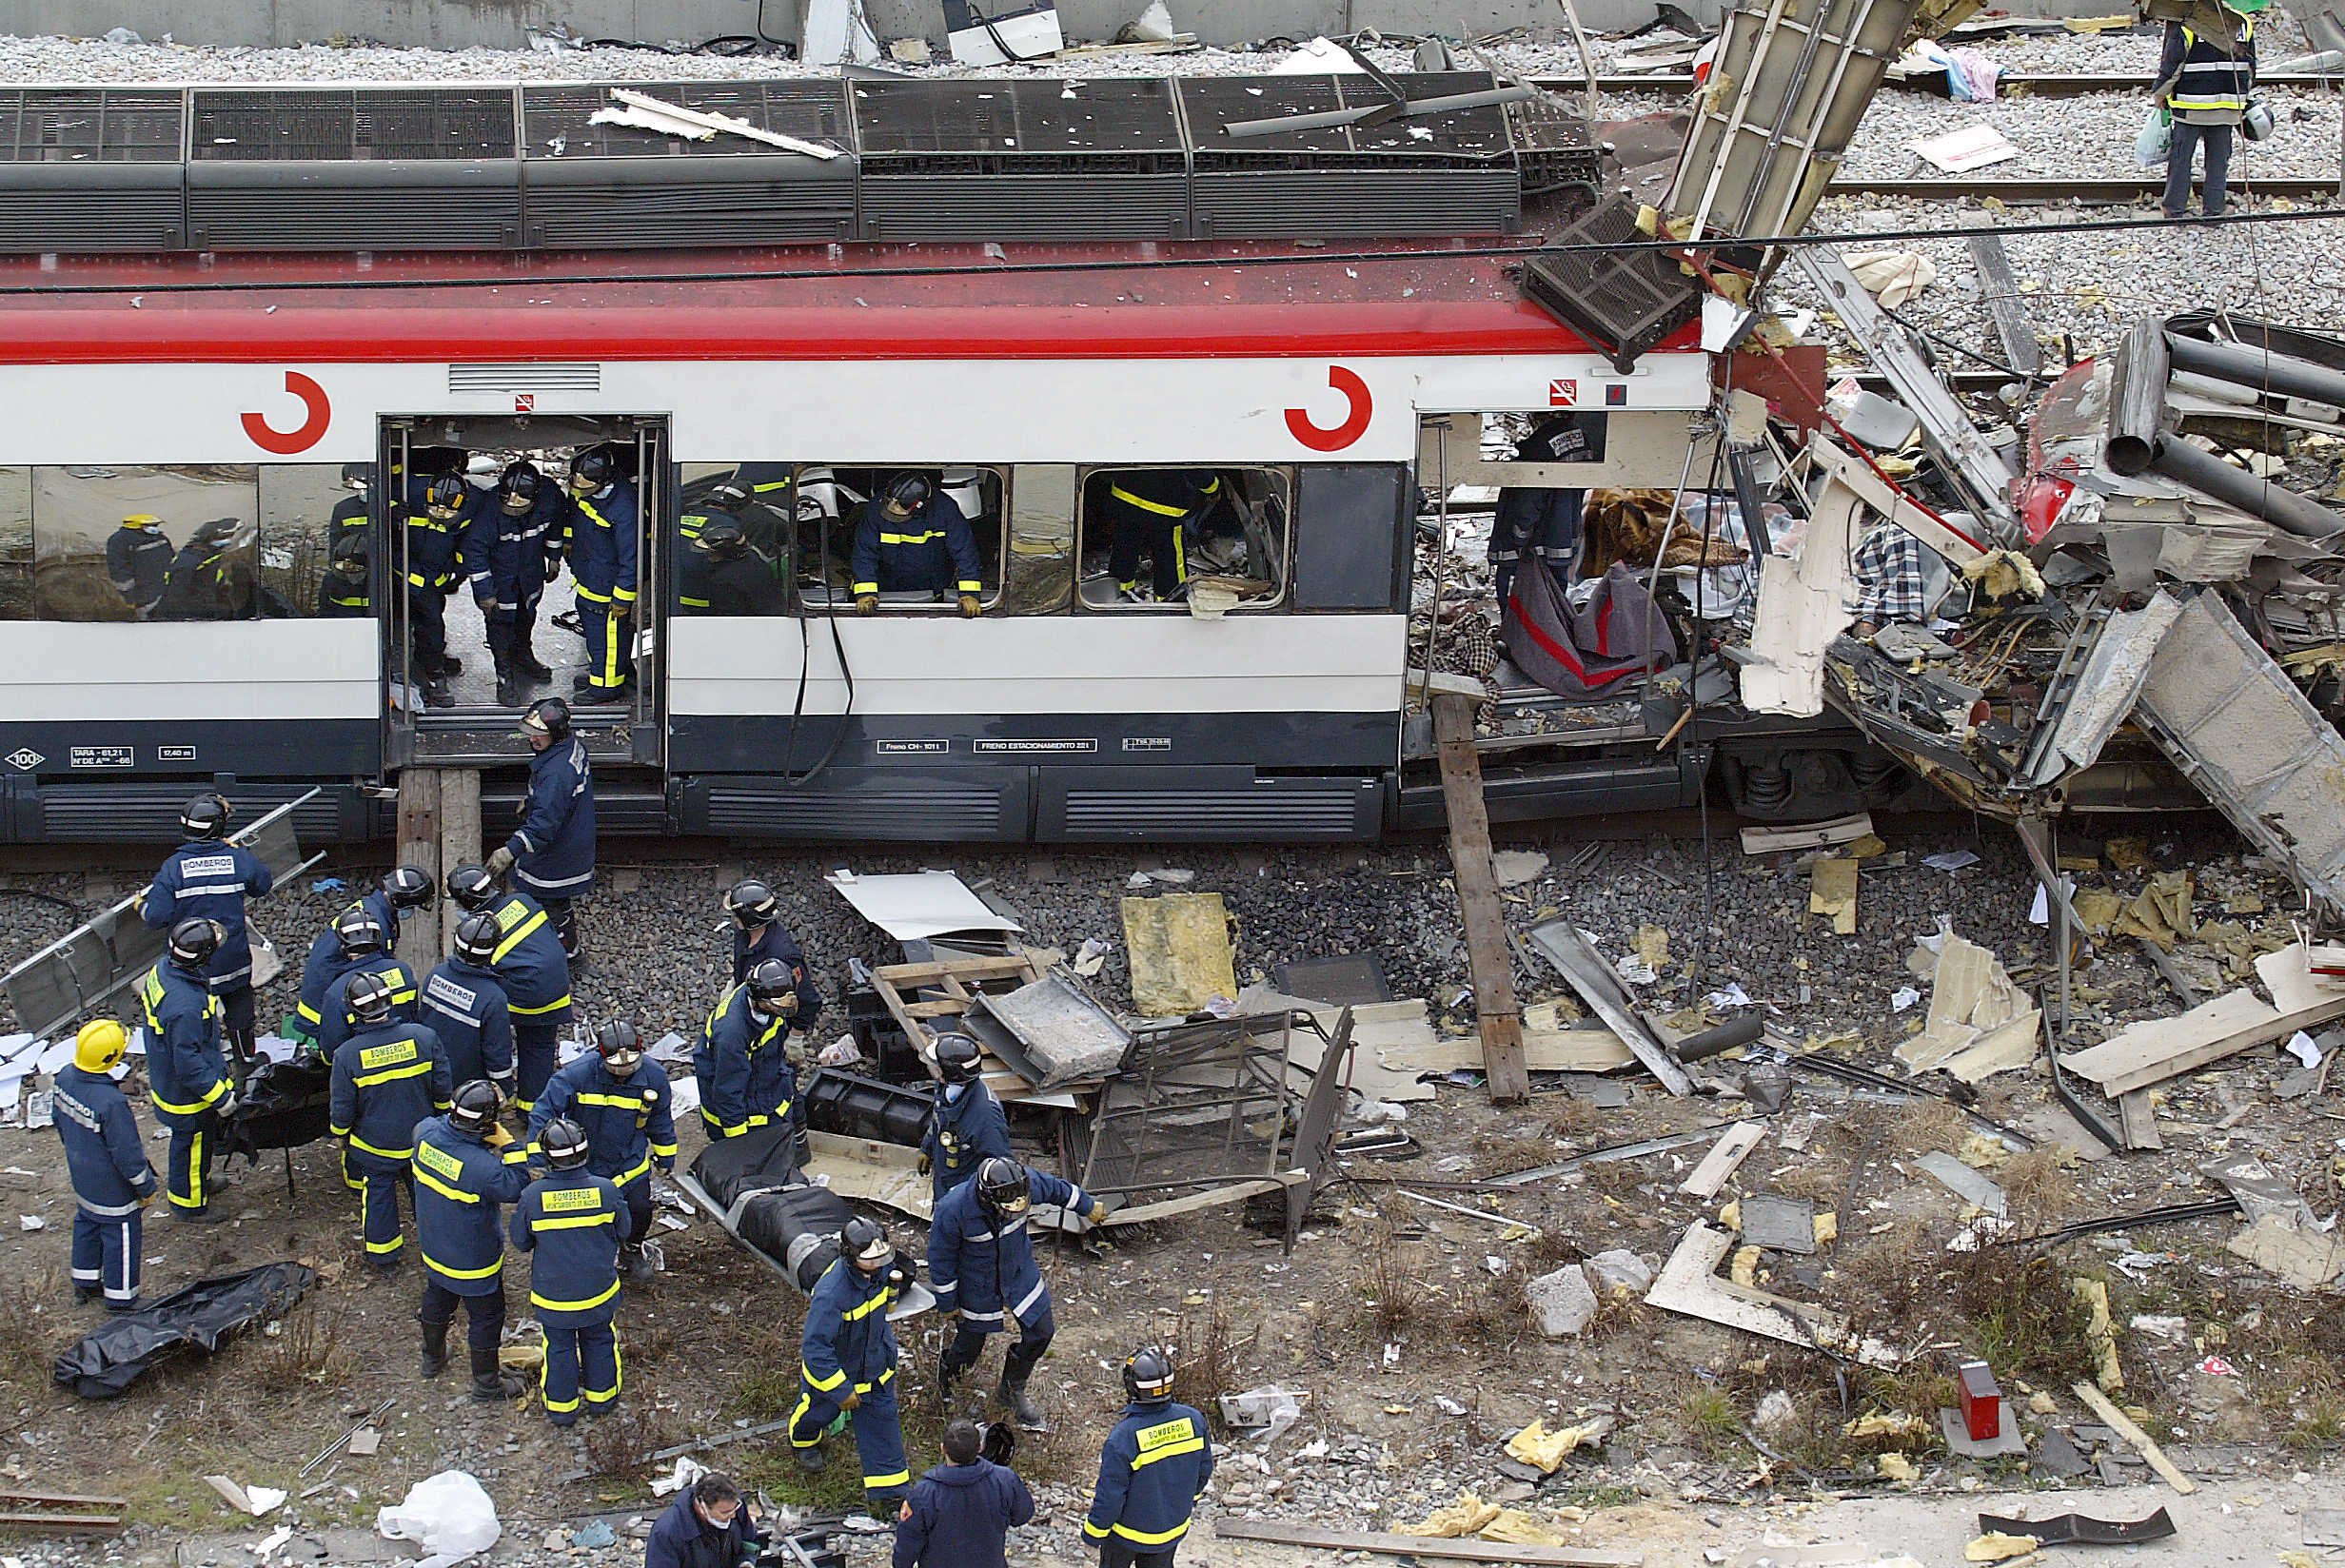 Socorristas retiran cadáveres del tren atacado en la estación de Atocha, Madrid, luego de los atentados del 11 de marzo del 2004, que dejaron 191 muertos y un impacto en los madrileños. (Foto: AFP)